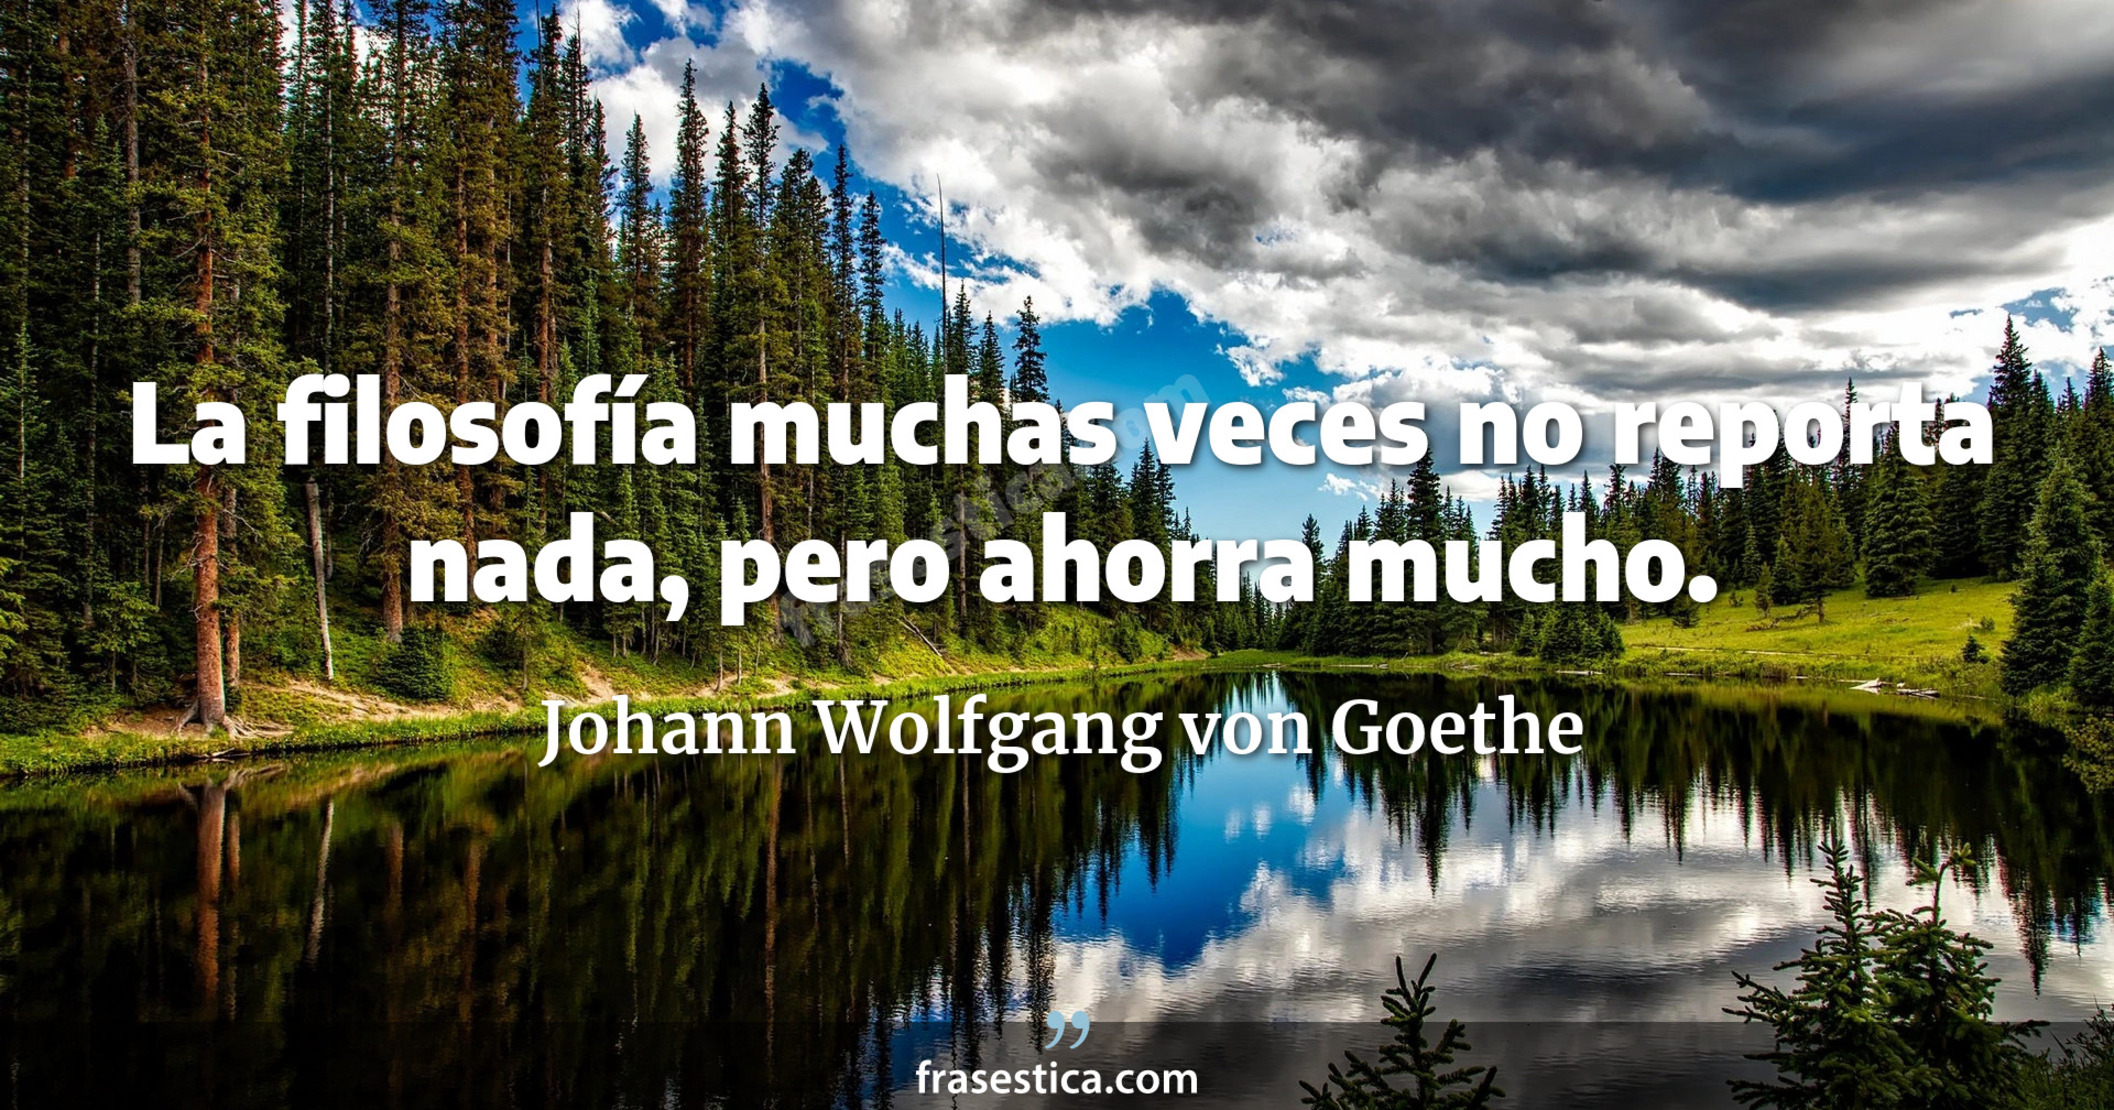 La filosofía muchas veces no reporta nada, pero ahorra mucho. - Johann Wolfgang von Goethe